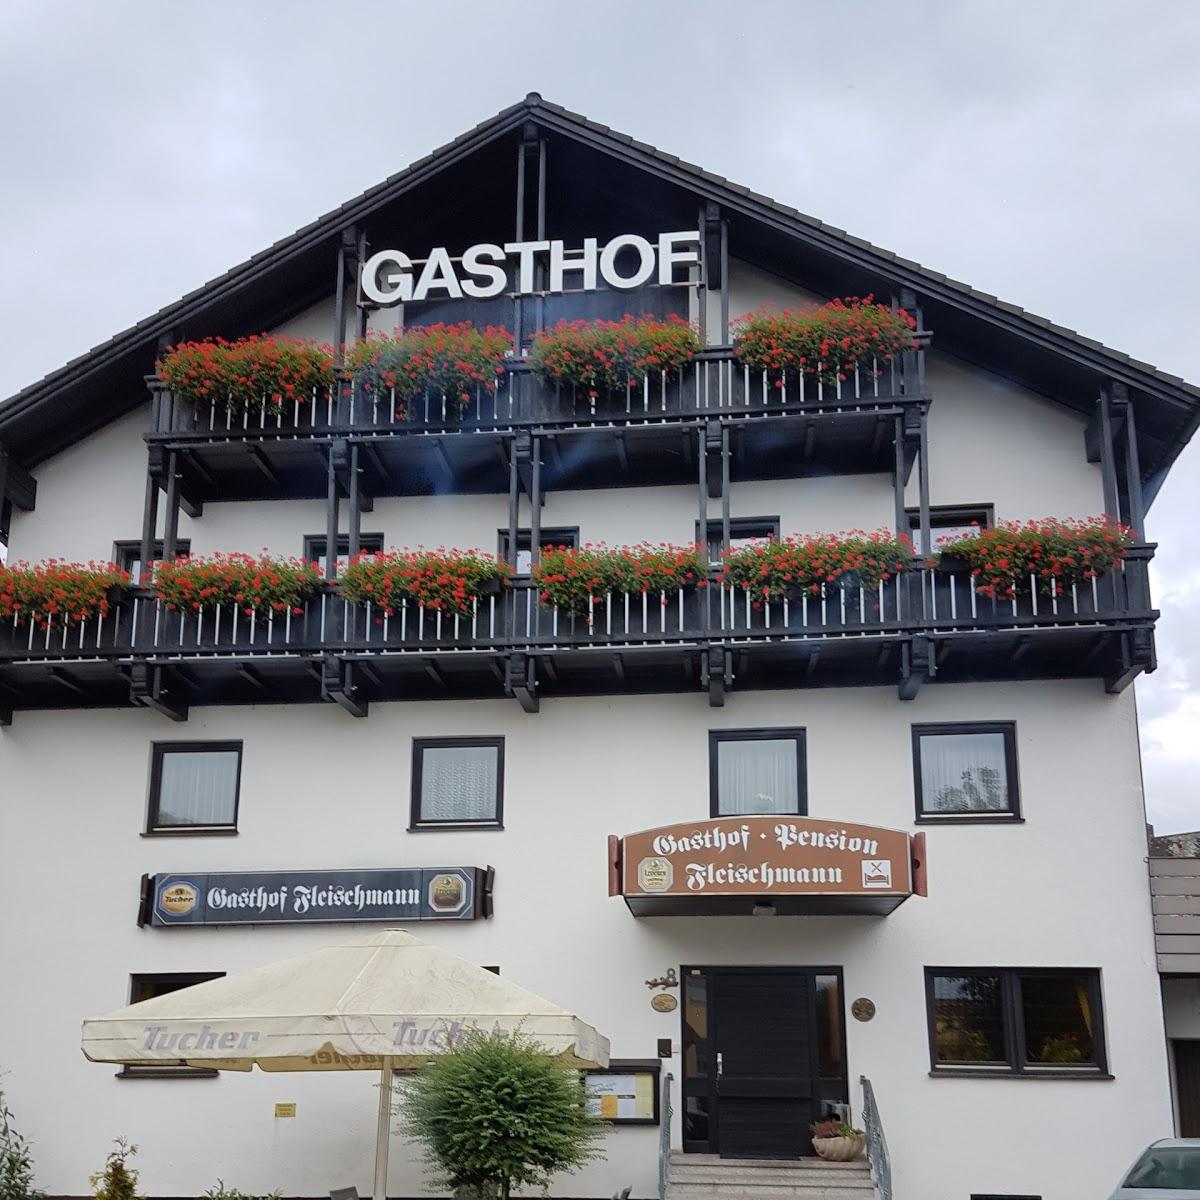 Restaurant "Gasthof Fleischmann" in Neumarkt in der Oberpfalz